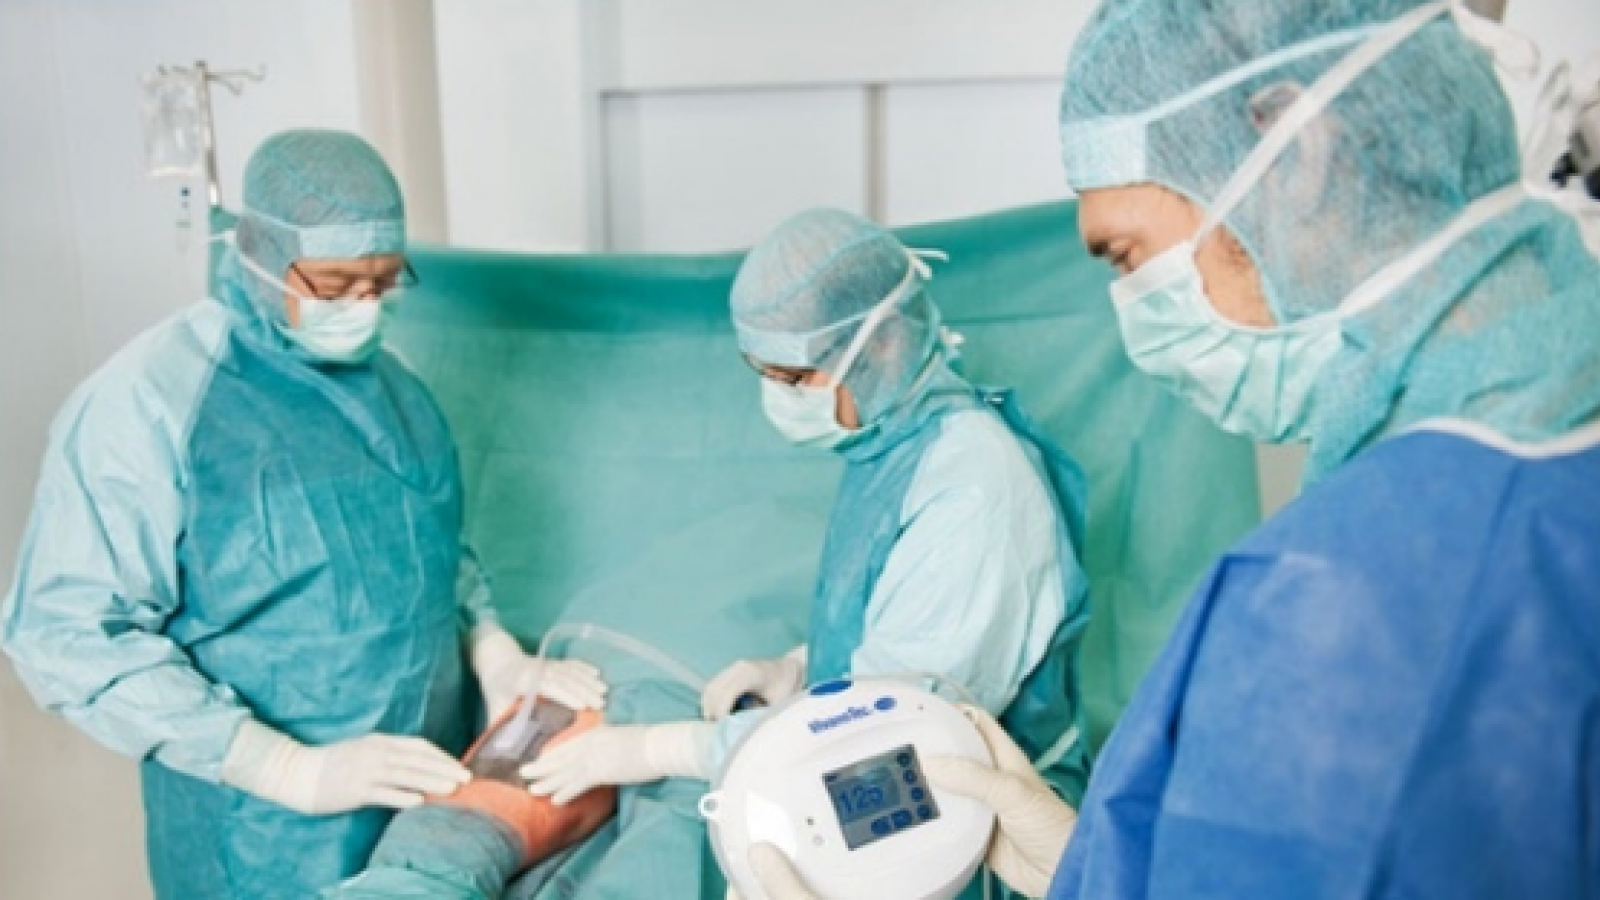 В Медсанчасти «Северстали» врачи будут лечить раны вакуумными повязками